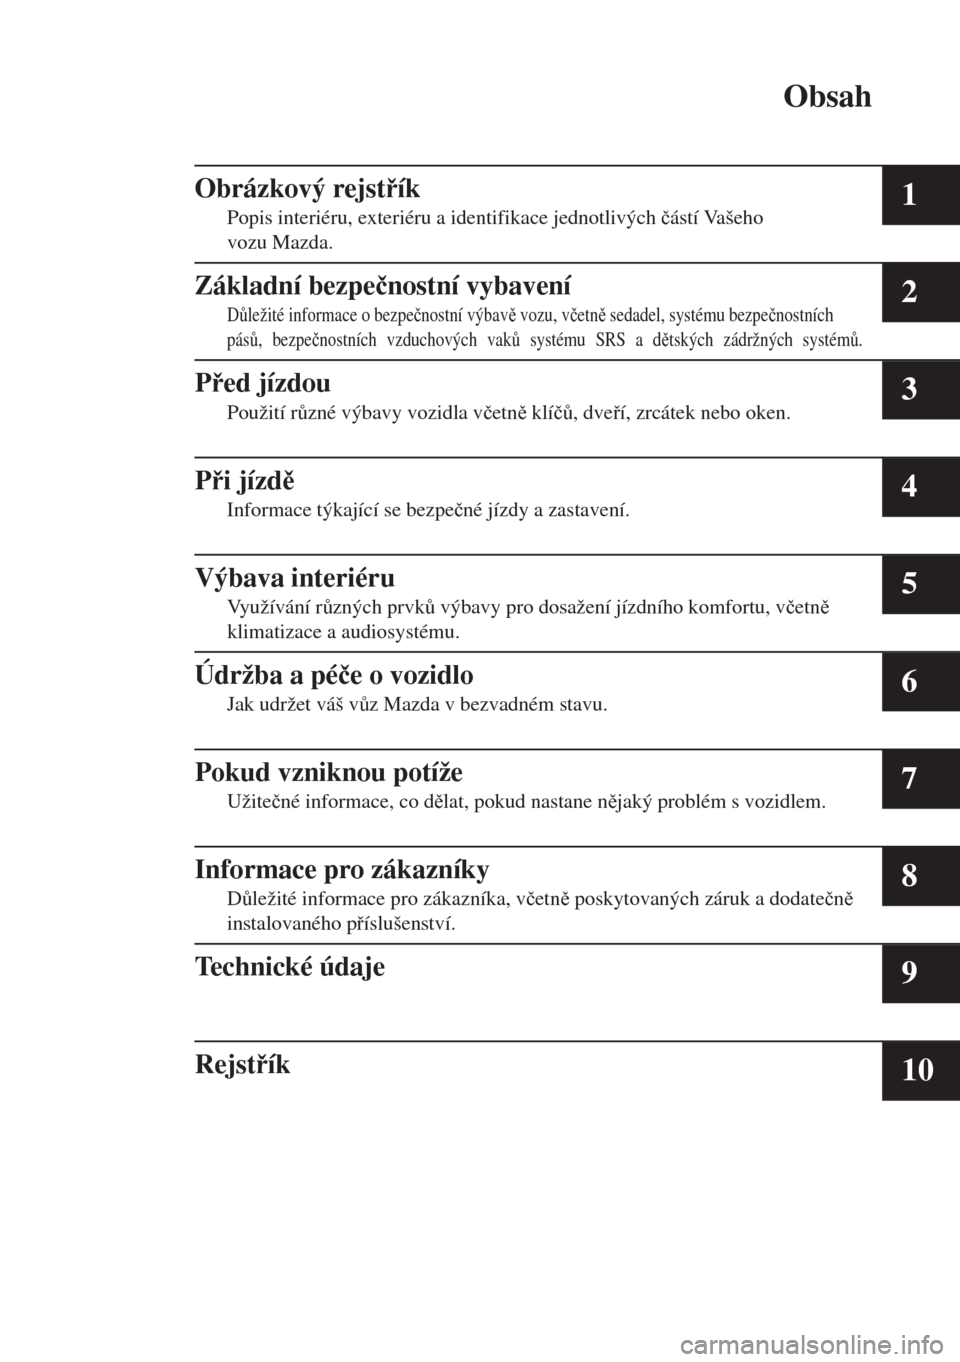 MAZDA MODEL MX-5 2017  Návod k obsluze (in Czech) Obsah
Obrázkový rejstík
Popis interiéru, exteriéru a identifikace jednotlivých �þástí Vašeho
vozu Mazda.1
Základní bezpe�þnostní vybavení
D$ležité informace o bezpe�þnostní výba